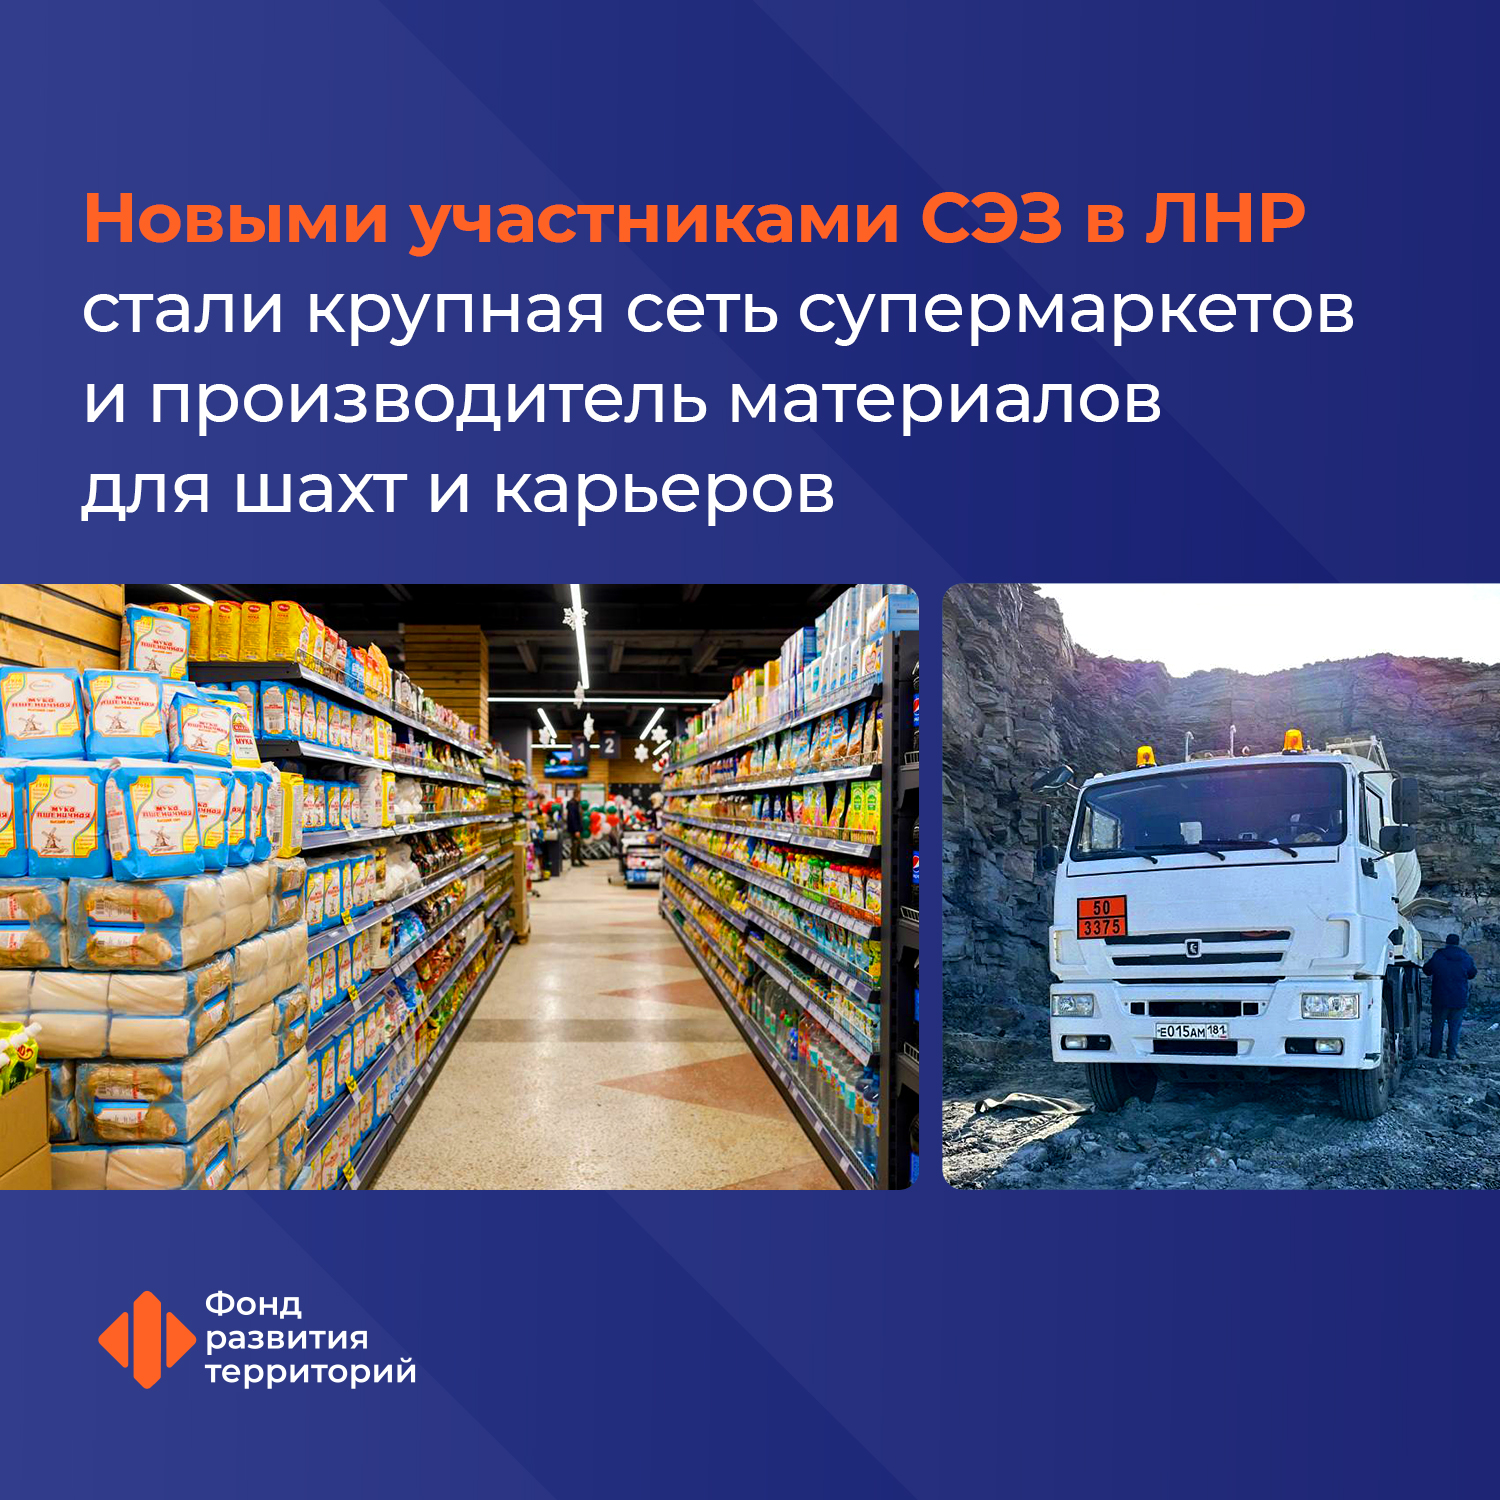 Новыми участниками СЭЗ в ЛНР стали крупная сеть супермаркетов и производитель материалов для шахт и карьеров